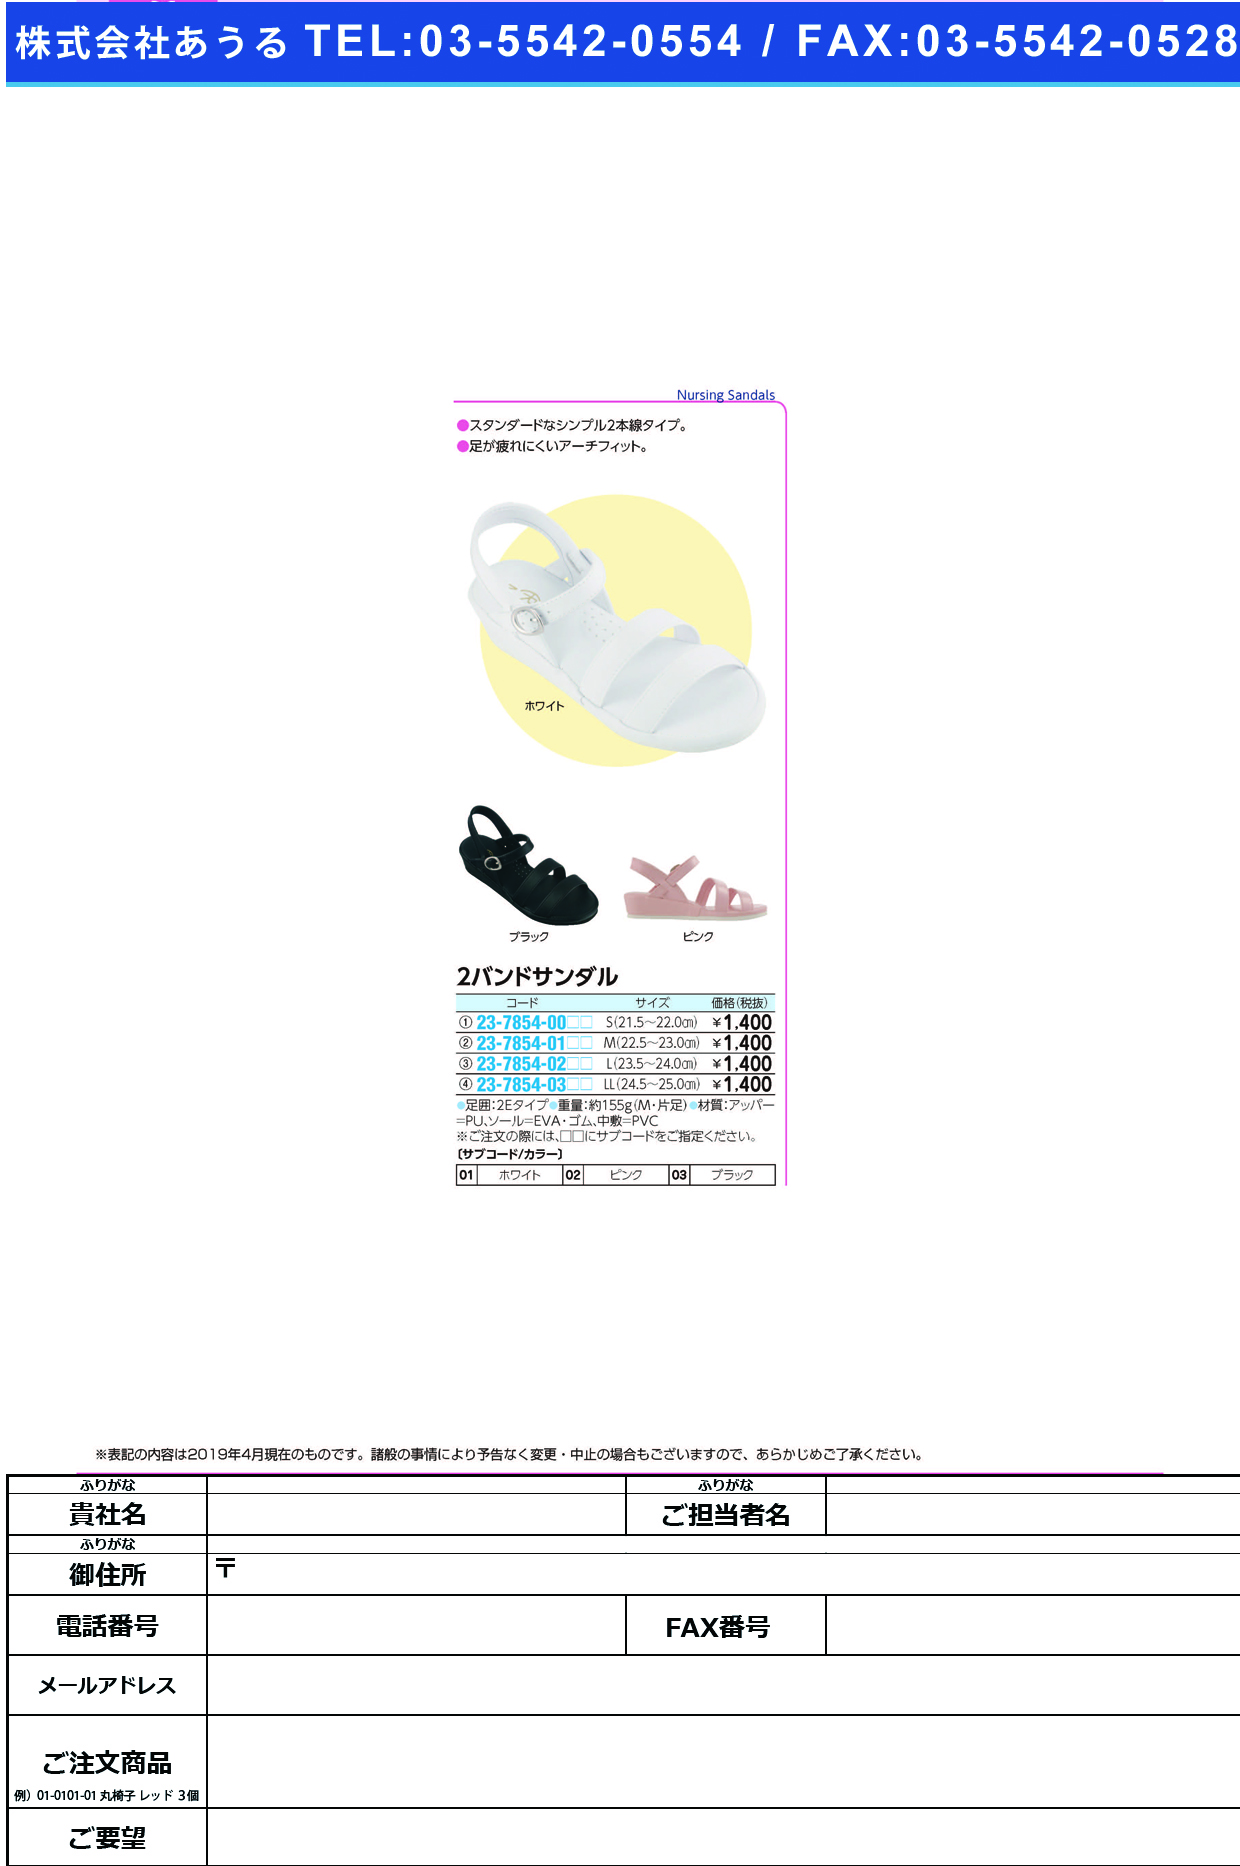 (23-7854-03)２バンドサンダル LL(24.5-25.0CM) ﾂｰﾊﾞﾝﾄﾞｻﾝﾀﾞﾙ ピンク(ファーストレイト)【1箱単位】【2019年カタログ商品】